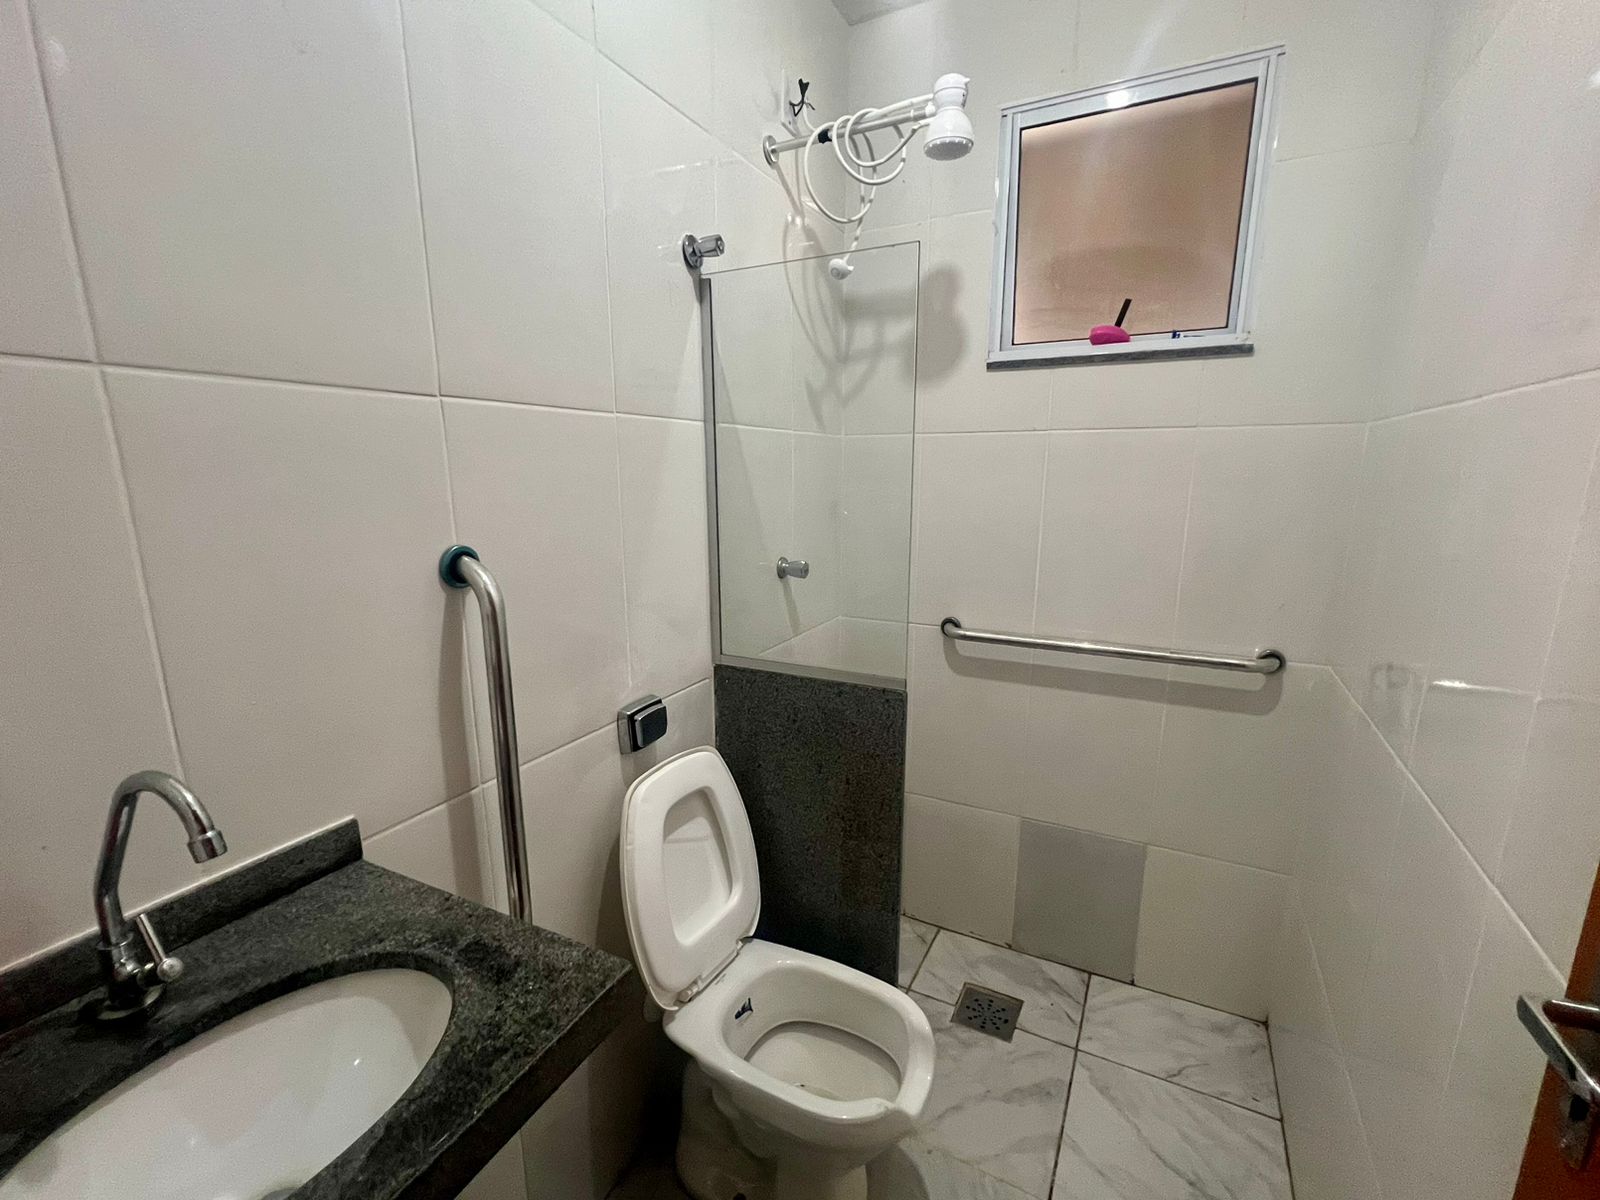 Belo Banho: Prefeitura conclui reforma de 50 banheiros para idosos de baixa renda